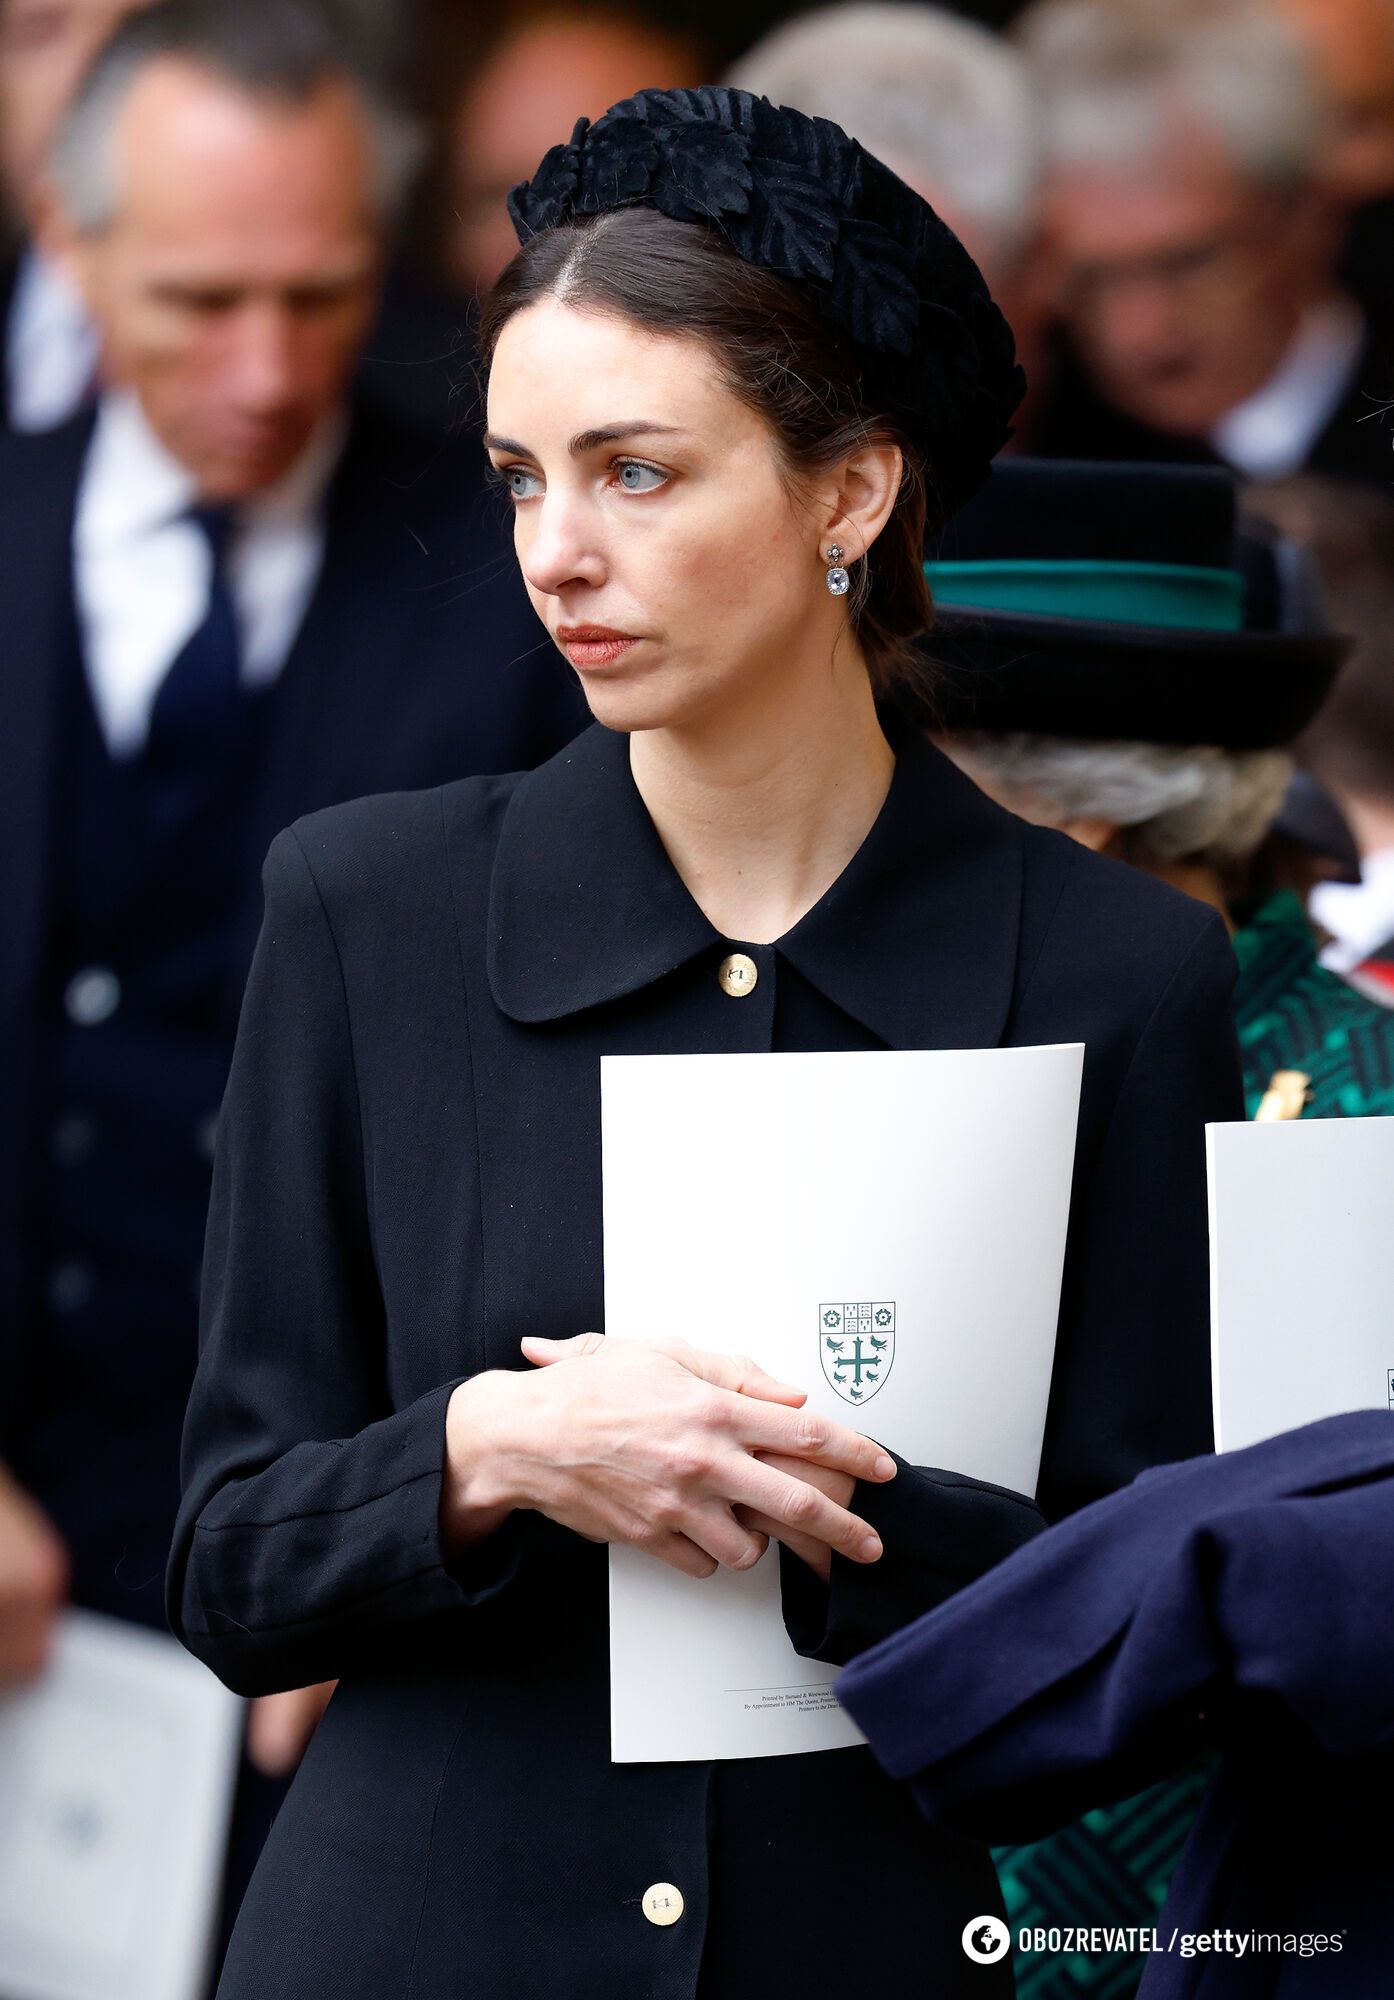 Sieć ponownie rozmawiała o ''wiejskiej kochance'' księcia Williama podczas skandalu z Kate Middleton: kim jest Rose Hanbury. Zdjęcie